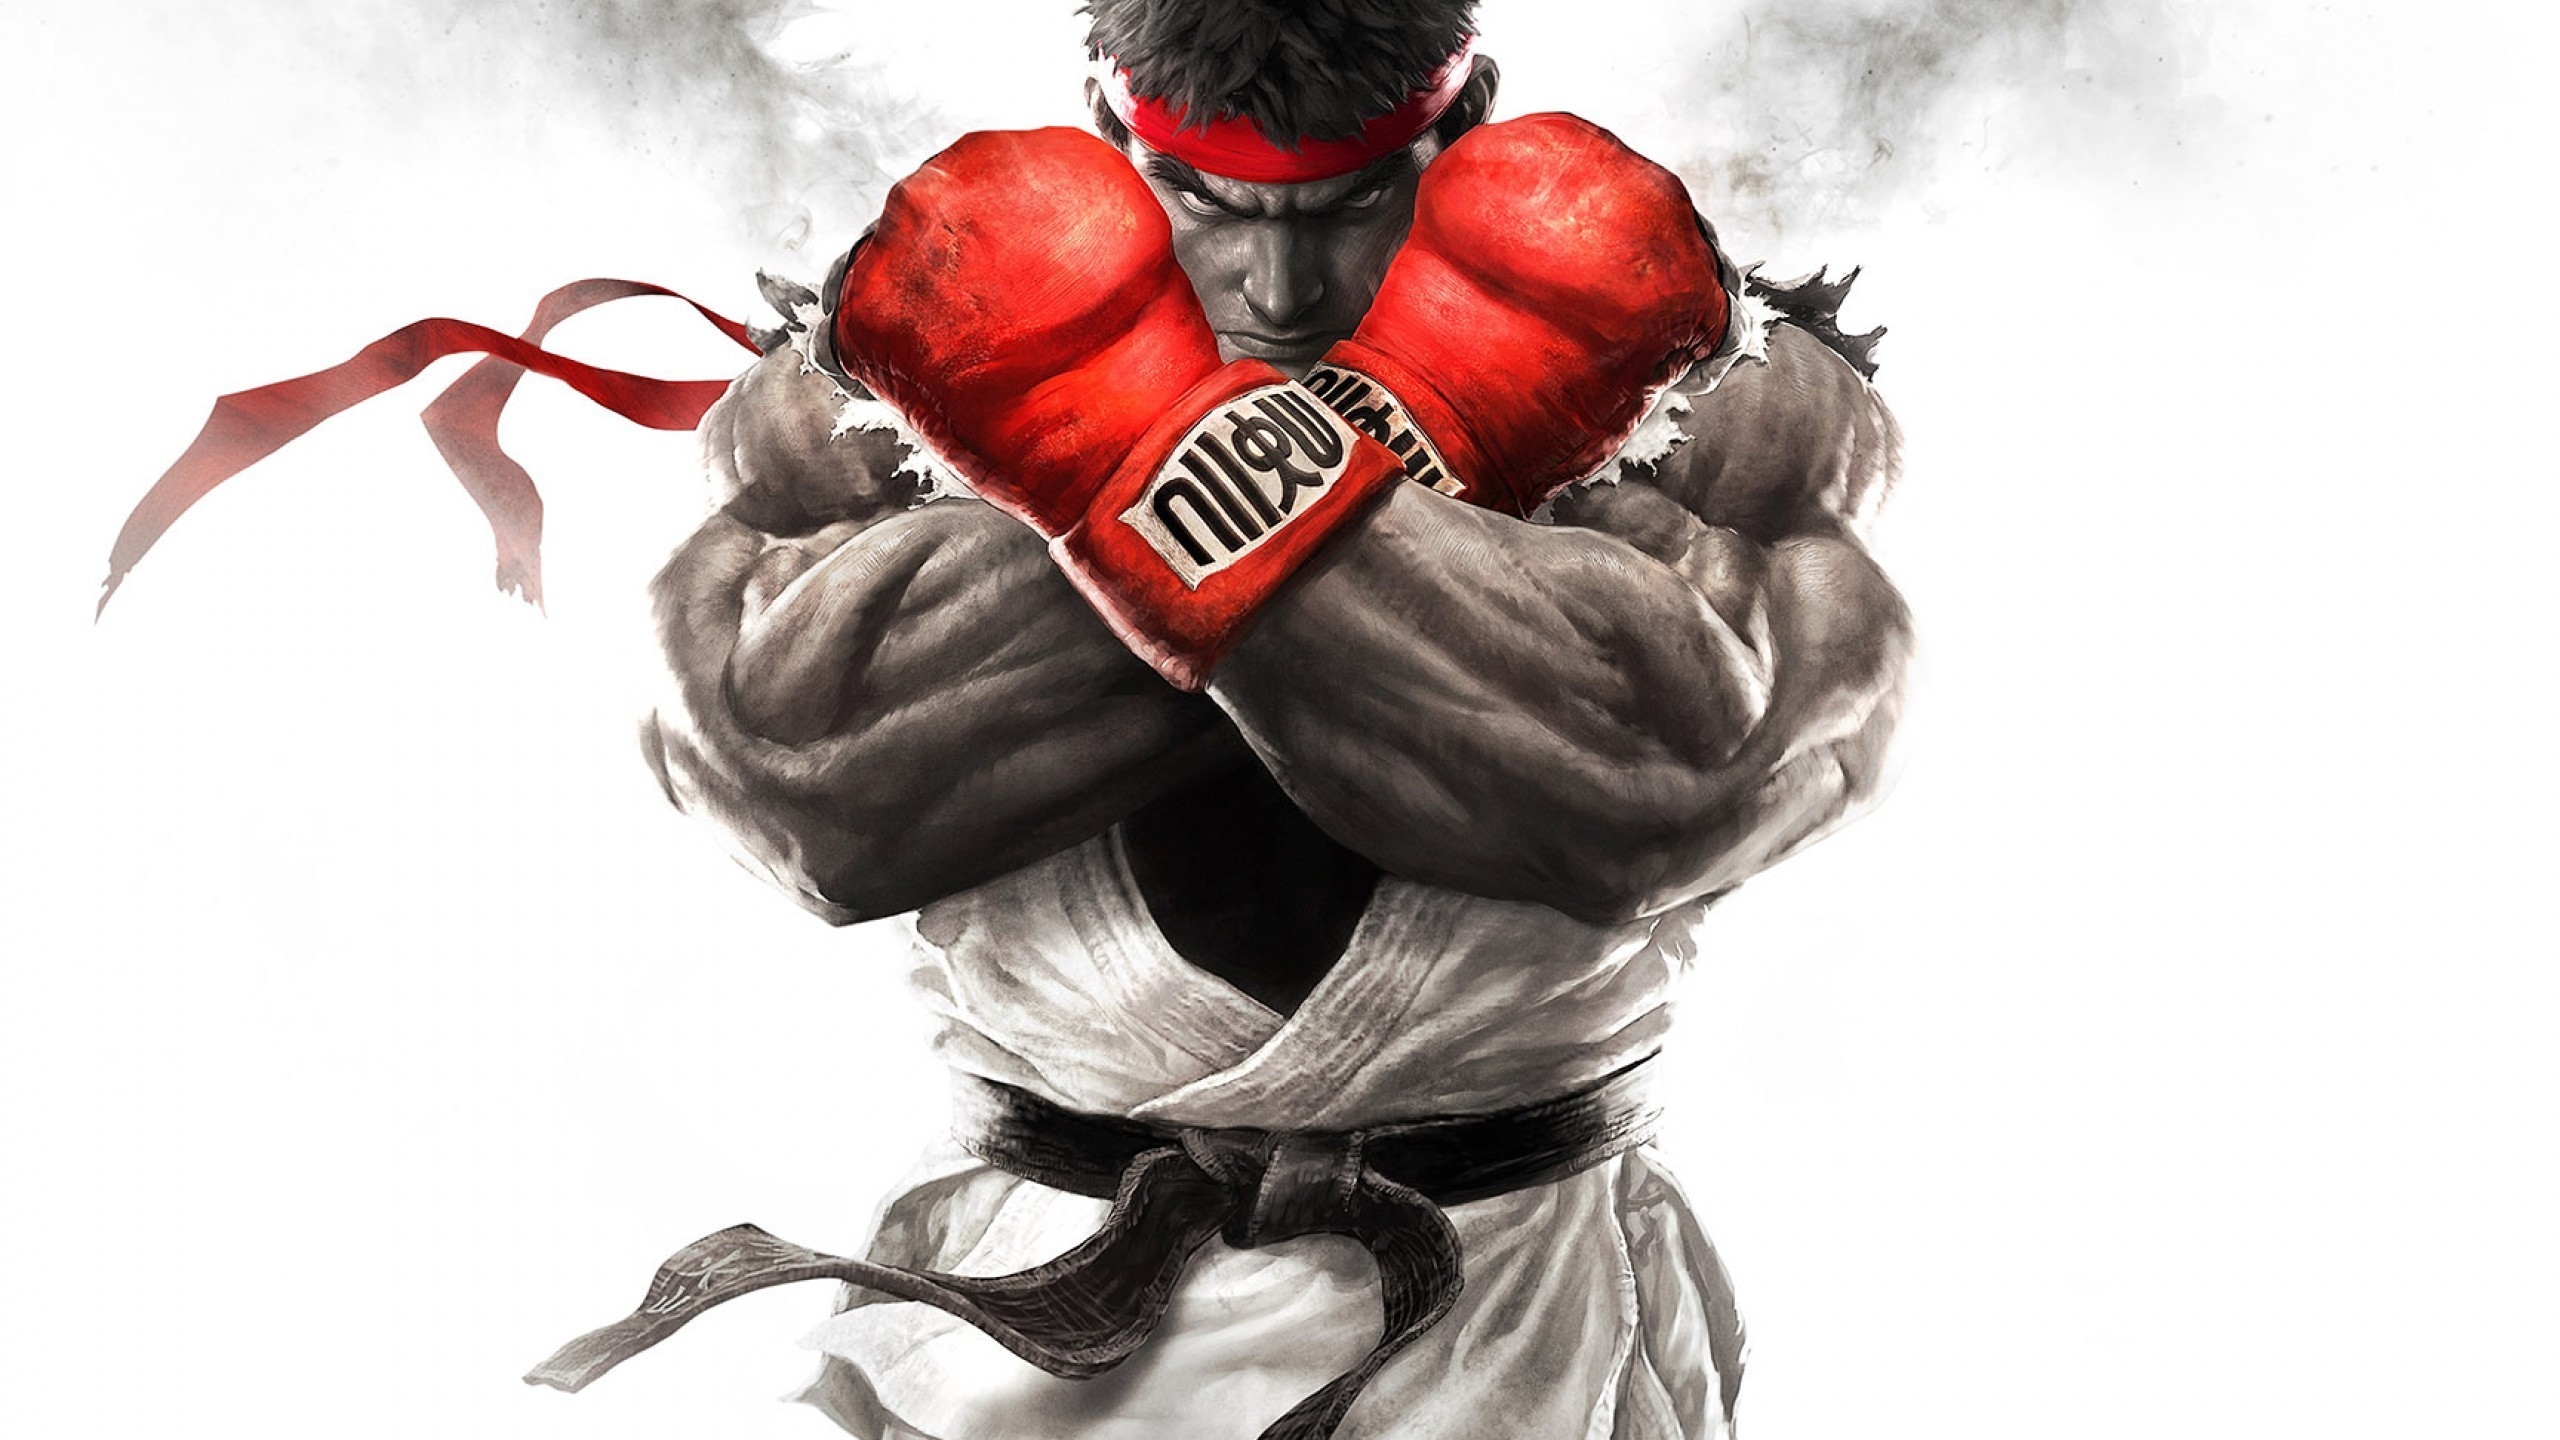 Street Fighter V for 2560x1440 HDTV resolution